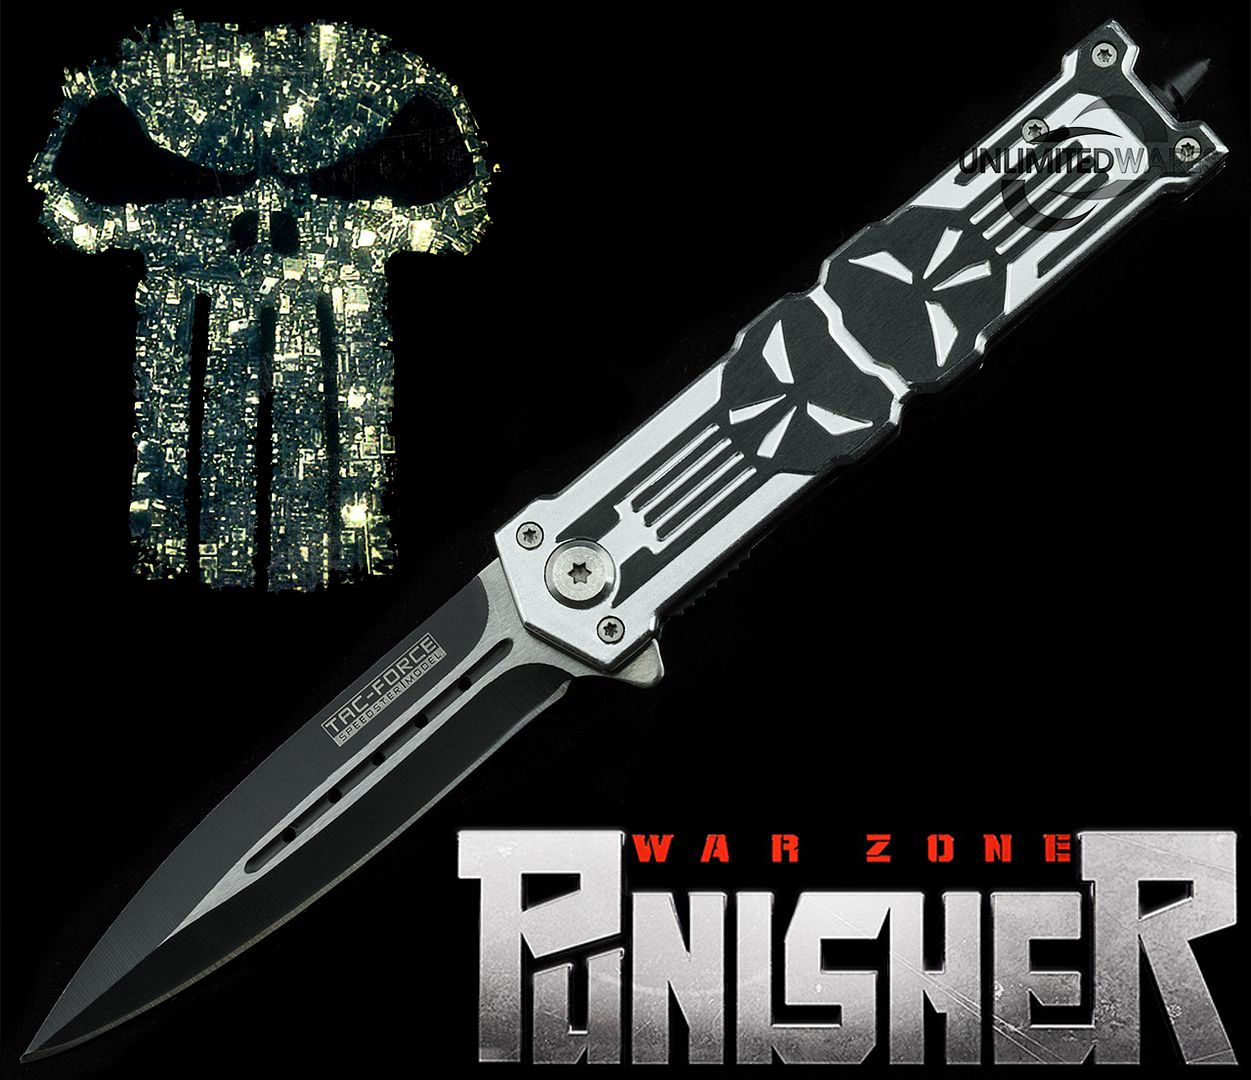 8 25" Protek Punisher Stiletto Spring Assisted Knife Folding Blade Open Pocket